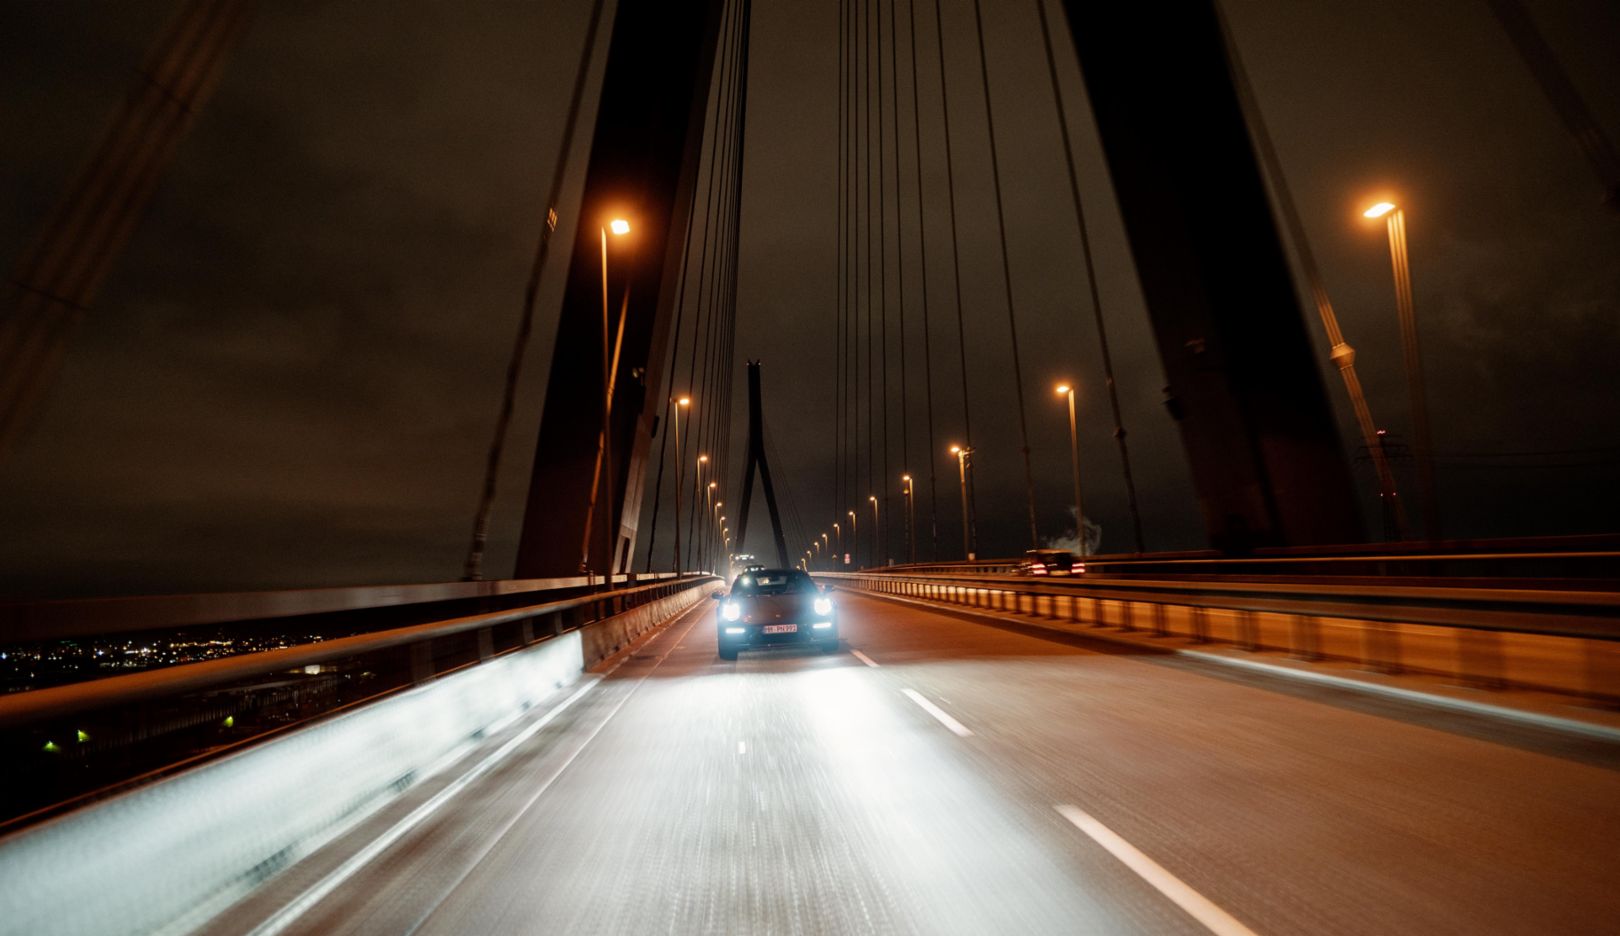 Kommt daher wie eine Filmszene: Der Porsche 911 Carrera 4S in Frontalansicht auf der Hamburger Köhlbrandbrücke bei Nacht.